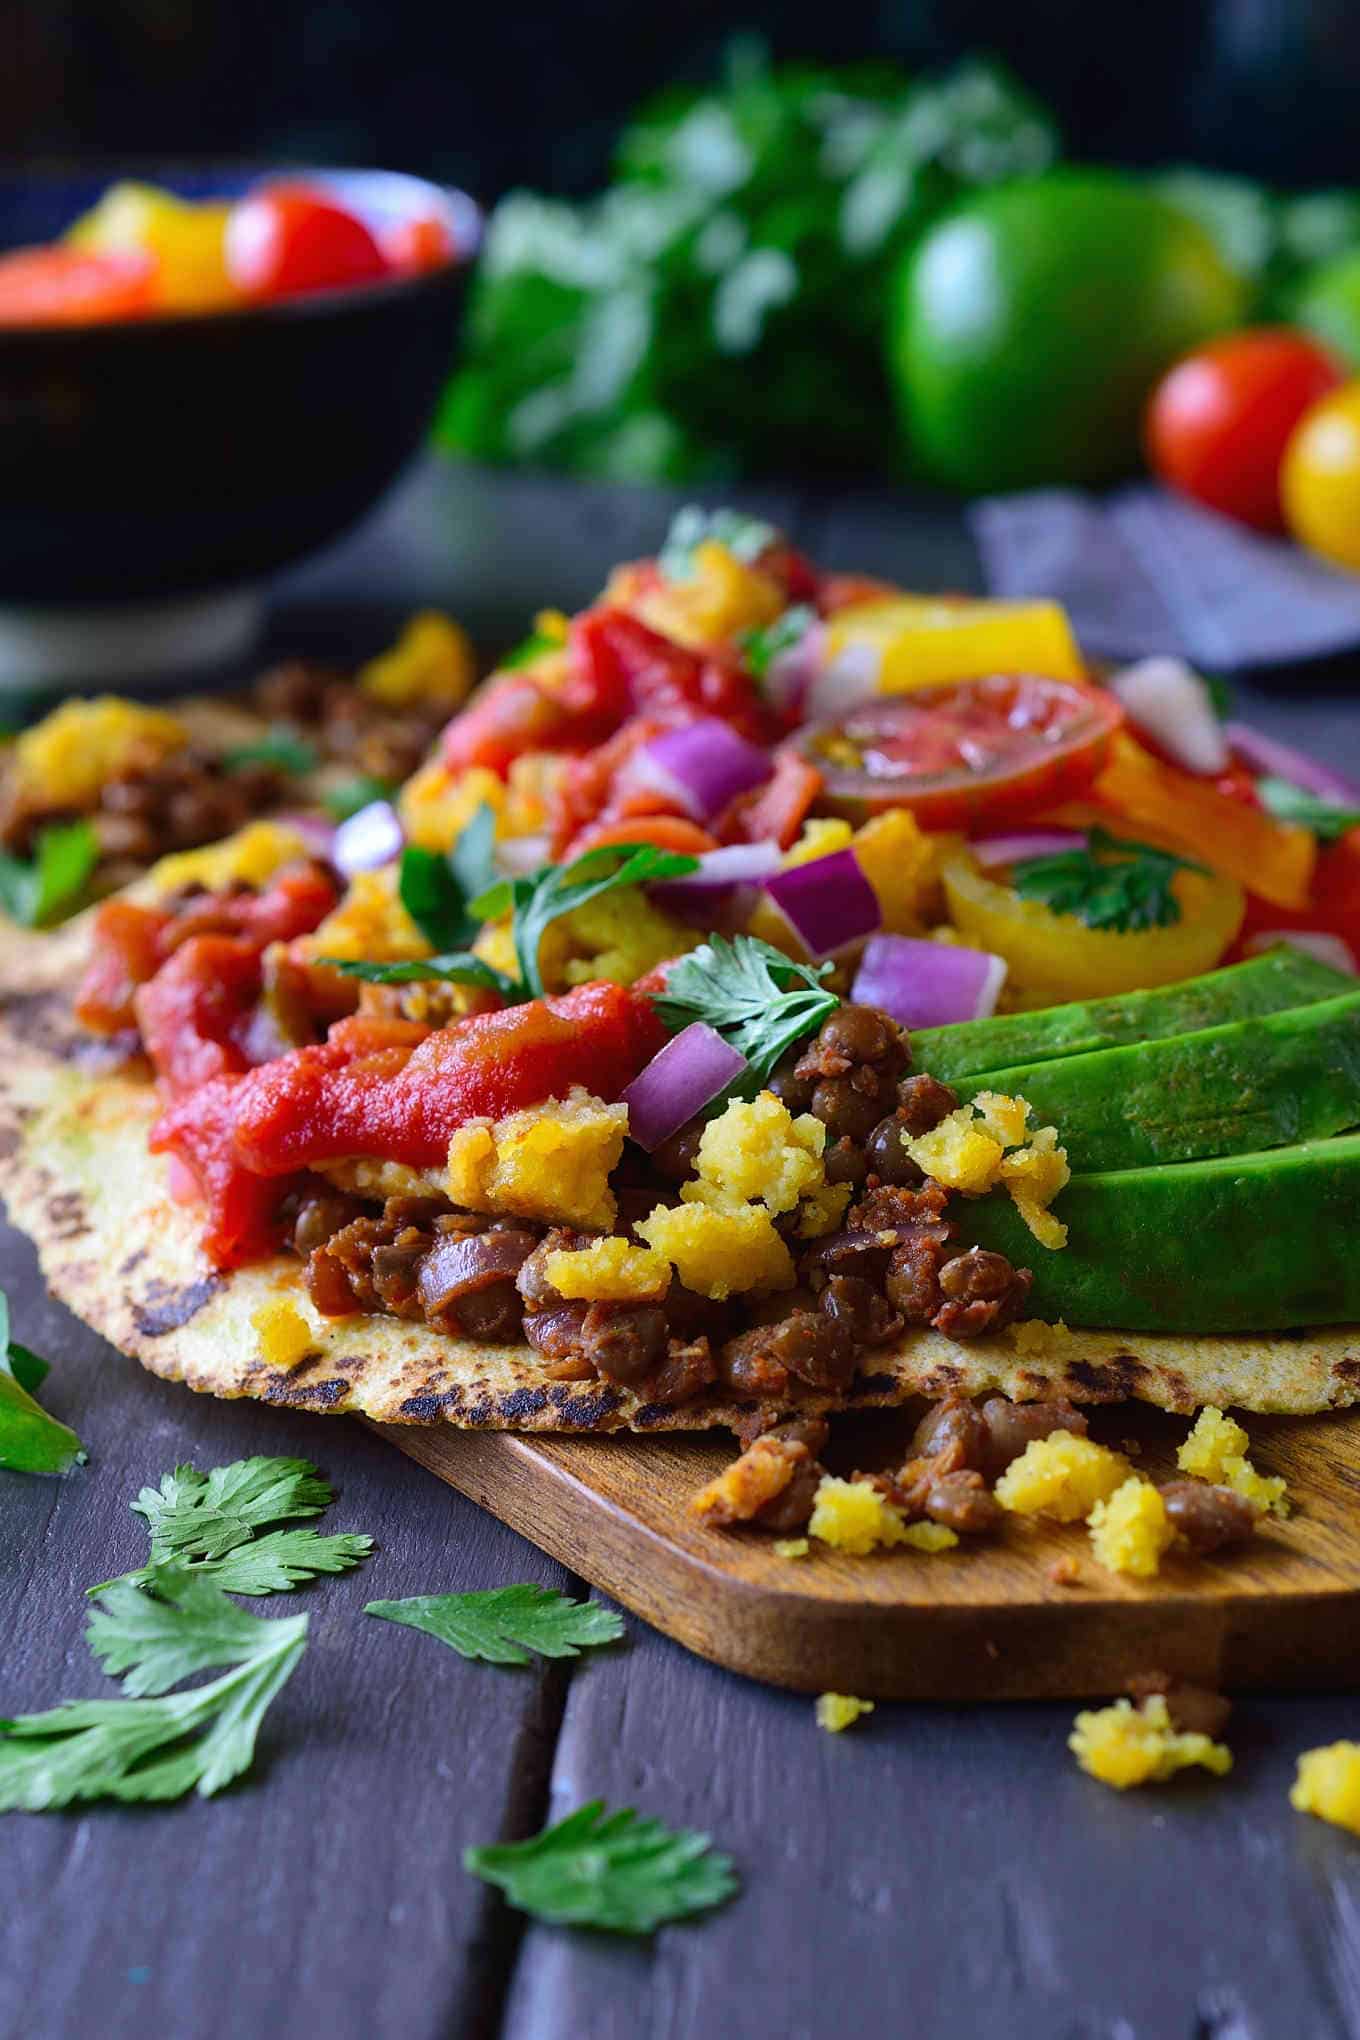 en öppen taco på ett bräde som visar fyllningen av linser, kikärtmjölägg, tomater och avokado.